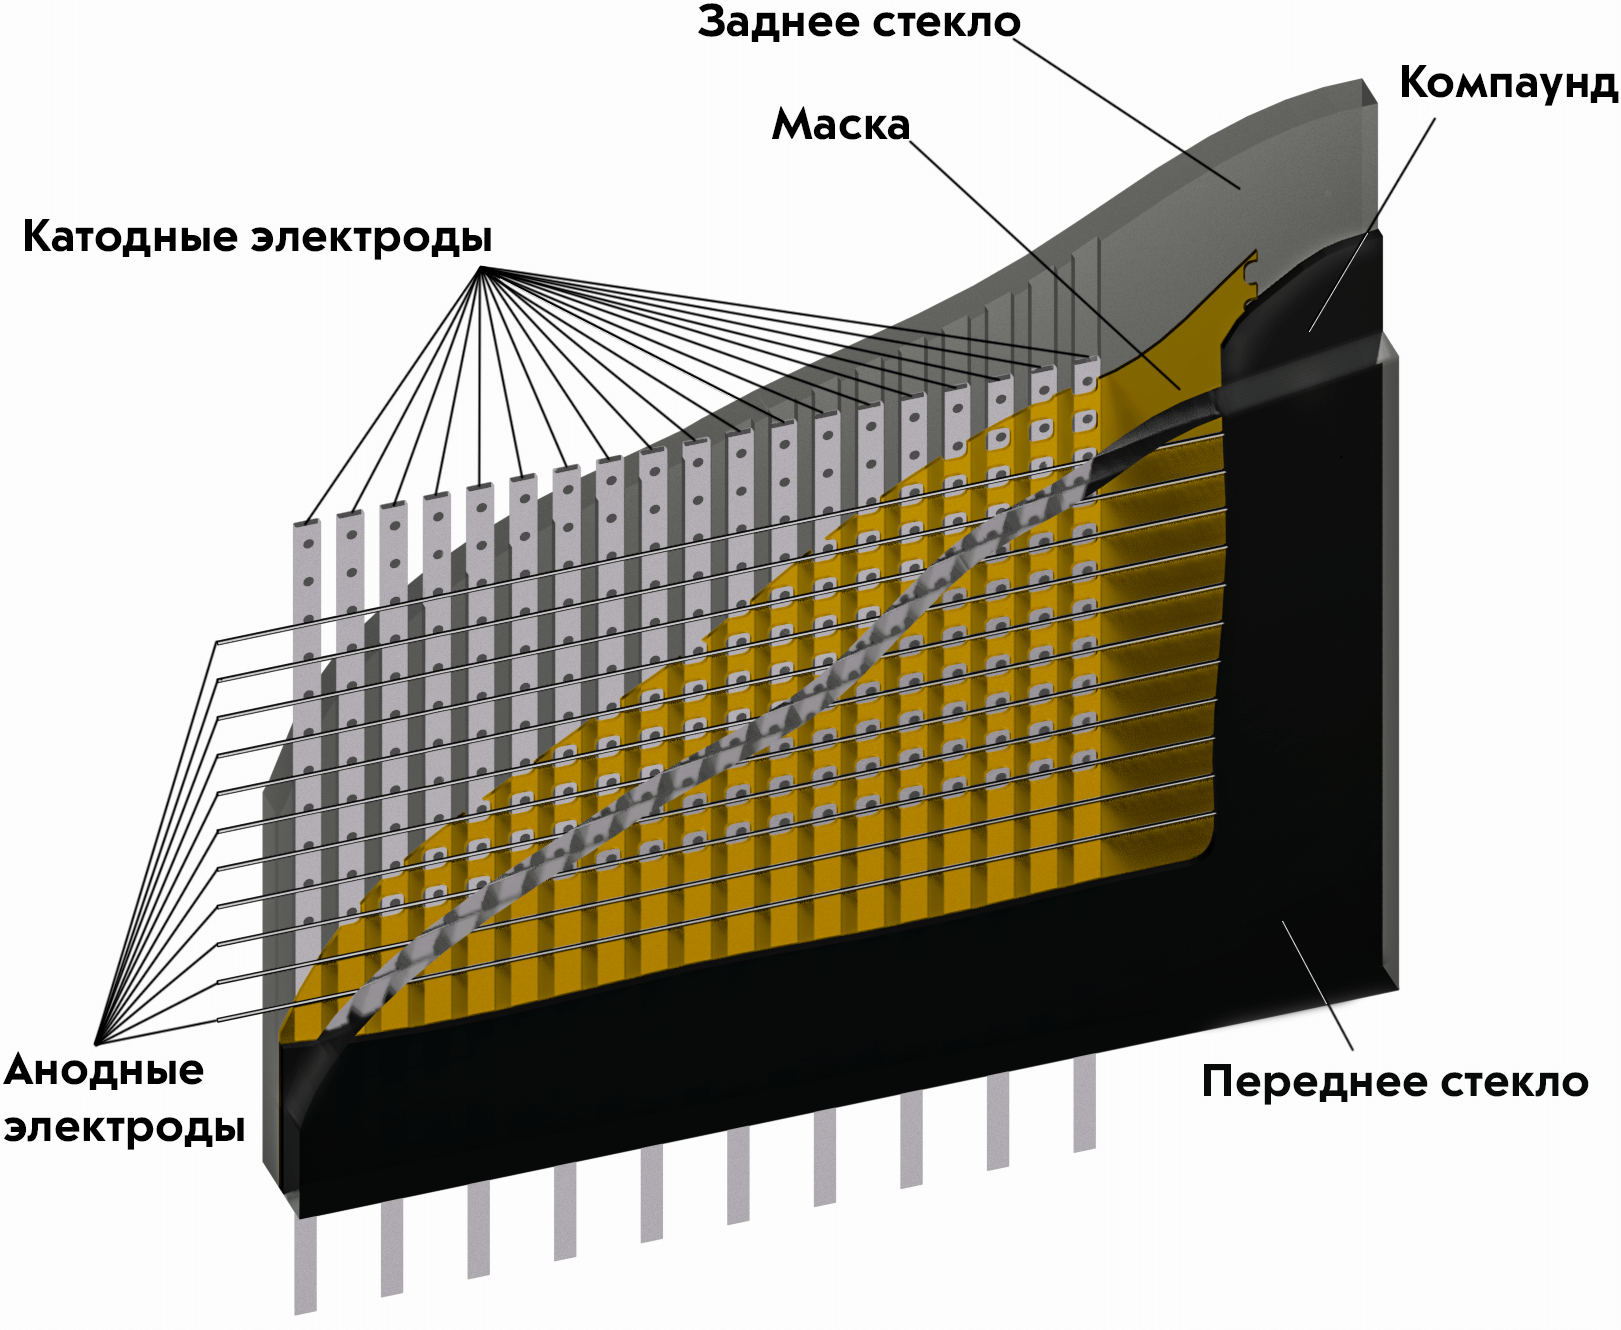 Опыт работы с советским газоразрядным дисплеем ГИП-10000 (ИМГ-1-02) - 1